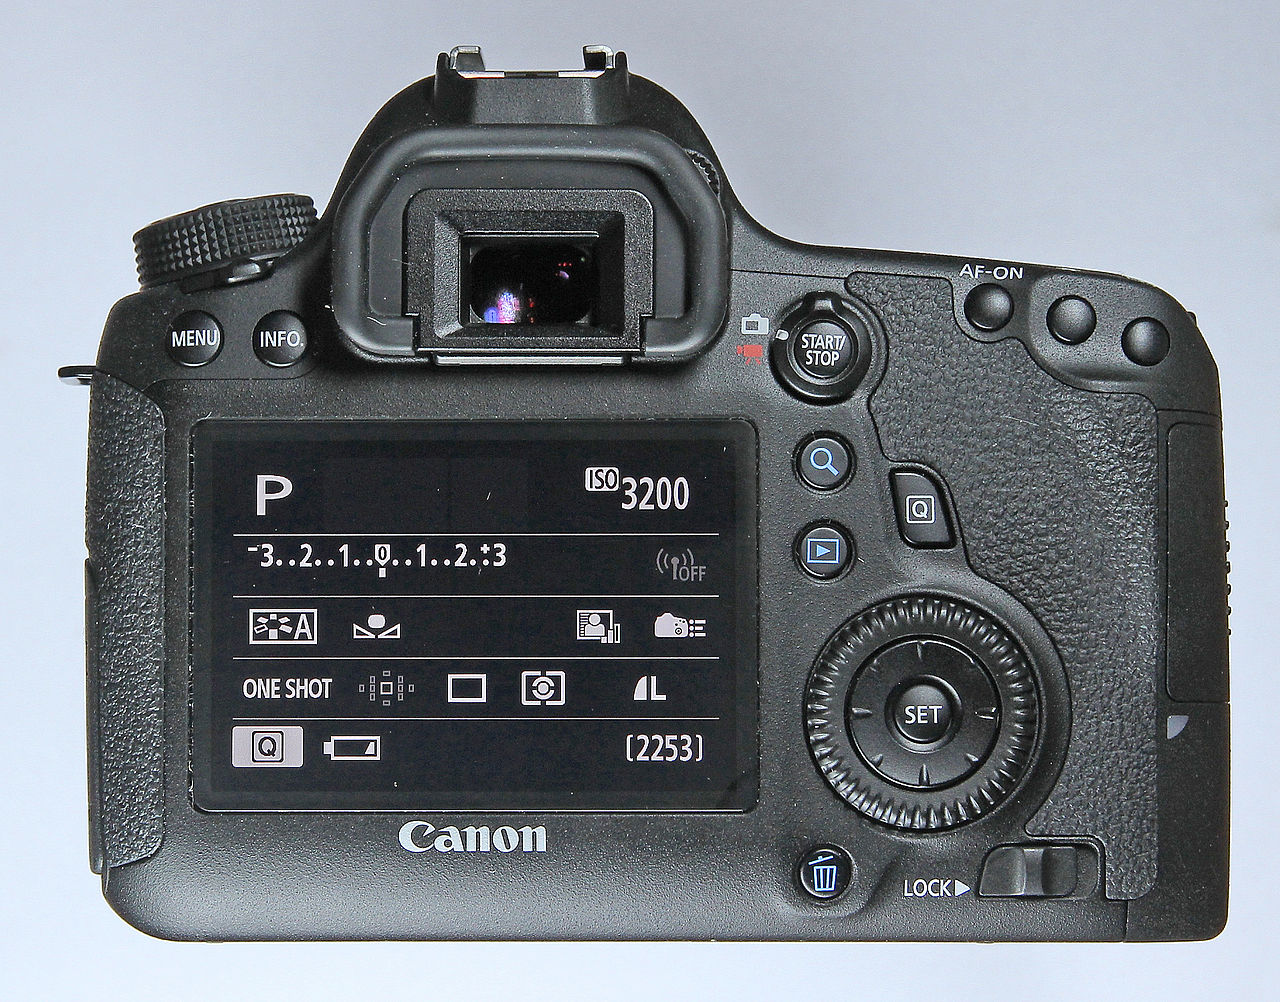 Canon EOS 6D là một trong những máy ảnh được ưa chuộng nhất hiện nay. Sử dụng các công nghệ tiên tiến nhất của Canon, đây là một thiết bị chuyên nghiệp và vô cùng đáng tin cậy. Ảnh liên quan sẽ giúp bạn tìm hiểu thêm về máy ảnh này và những tính năng đáng chú ý của nó.